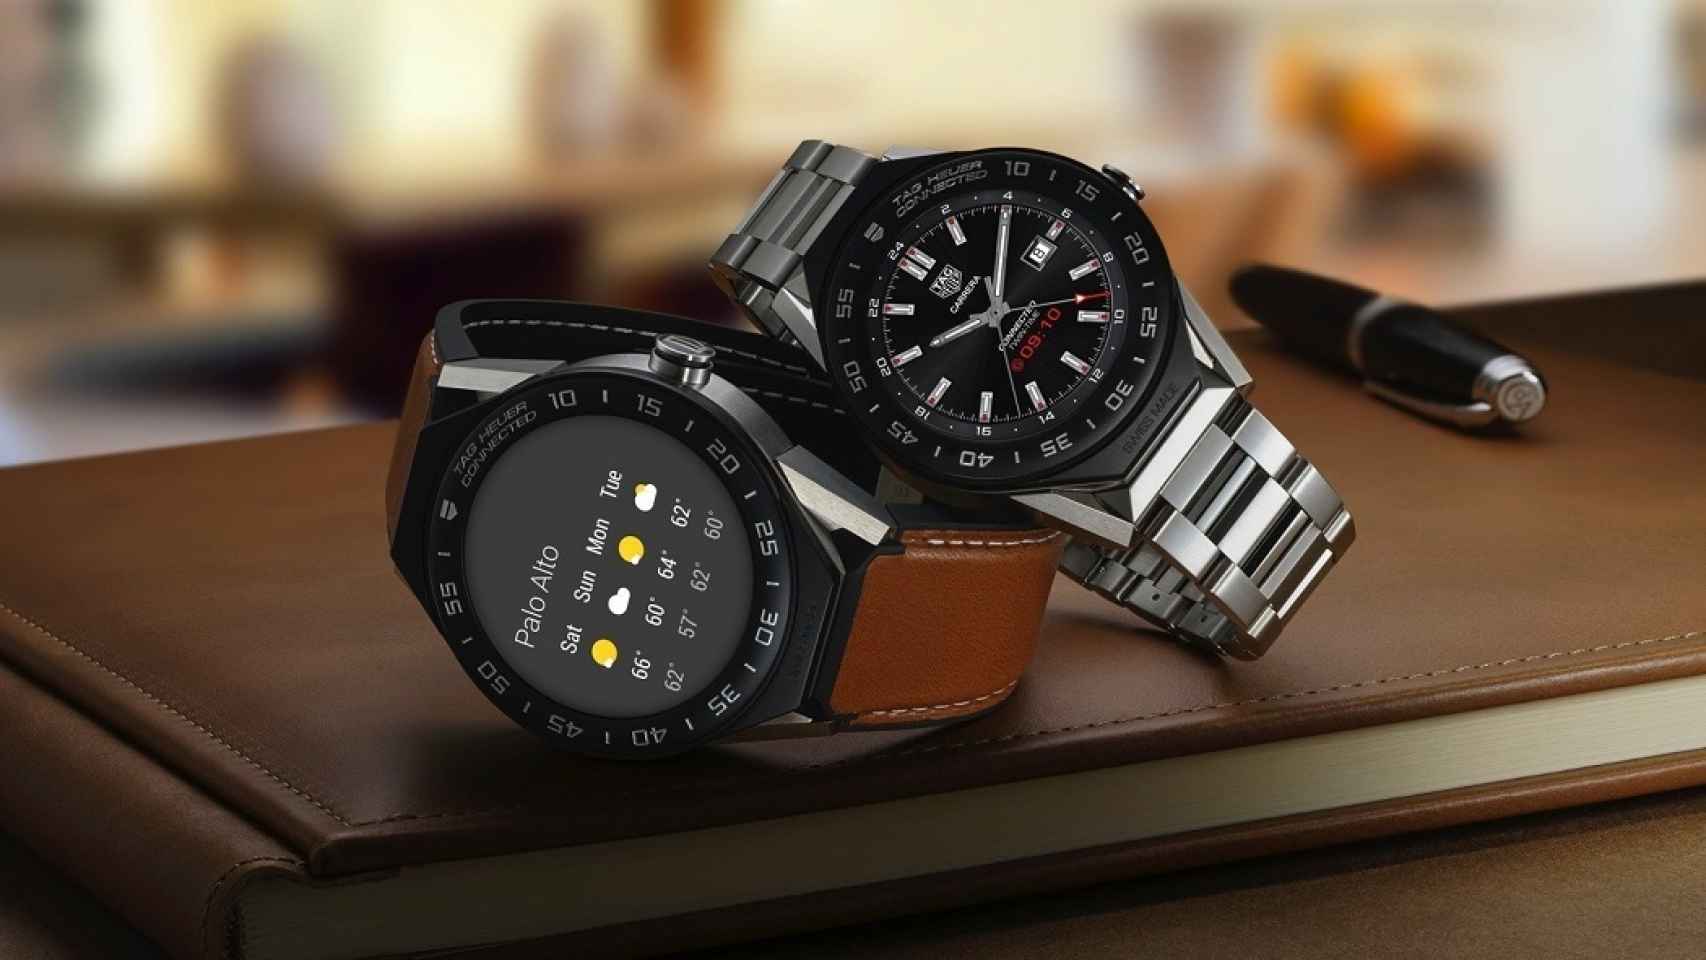 Nuevo smartwatch modular de Tag Heuer: de lujo y convertible en reloj mecánico